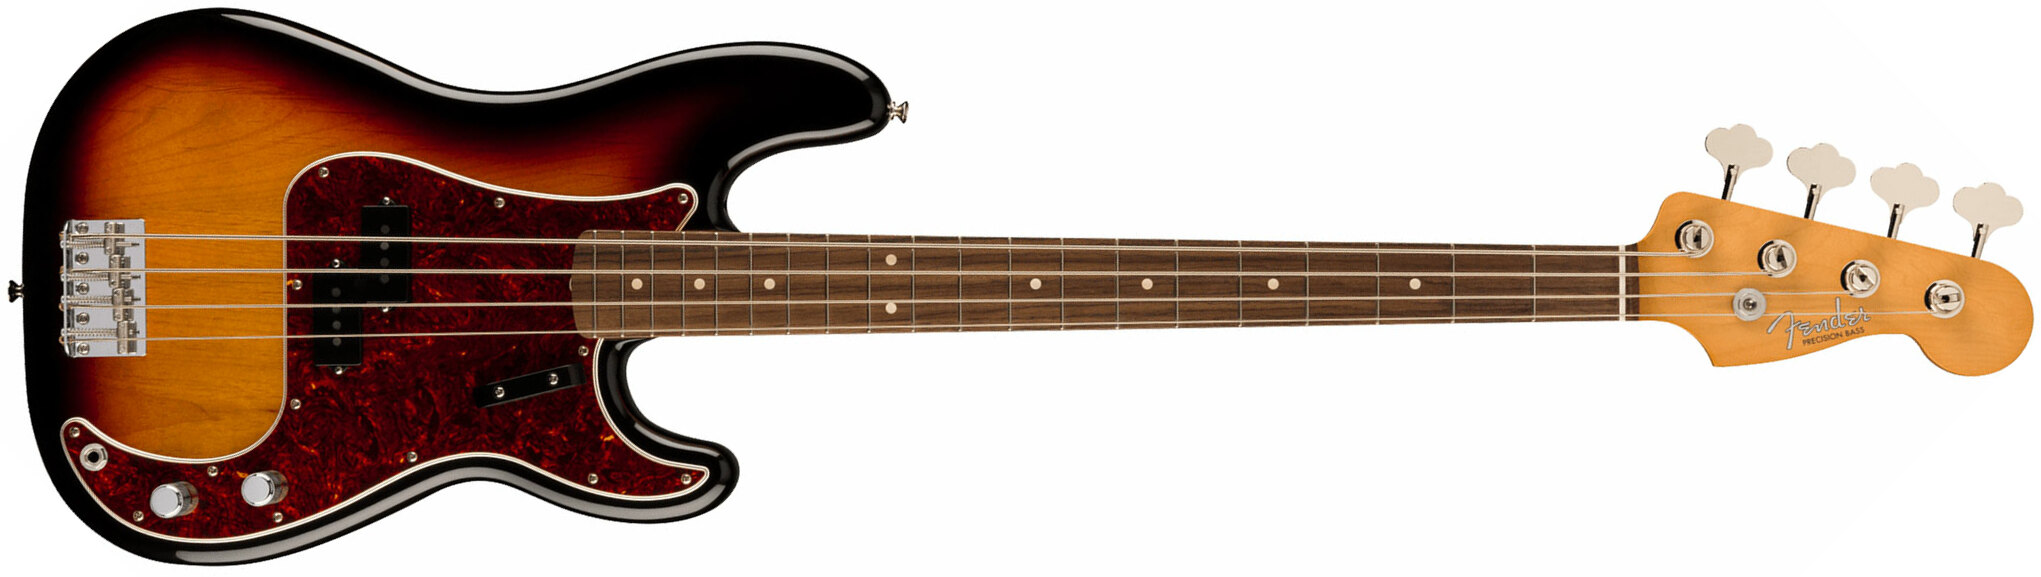 Fender Precision Bass 60s Vintera Ii Mex Rw - 3-color Sunburst - Solidbody E-bass - Main picture